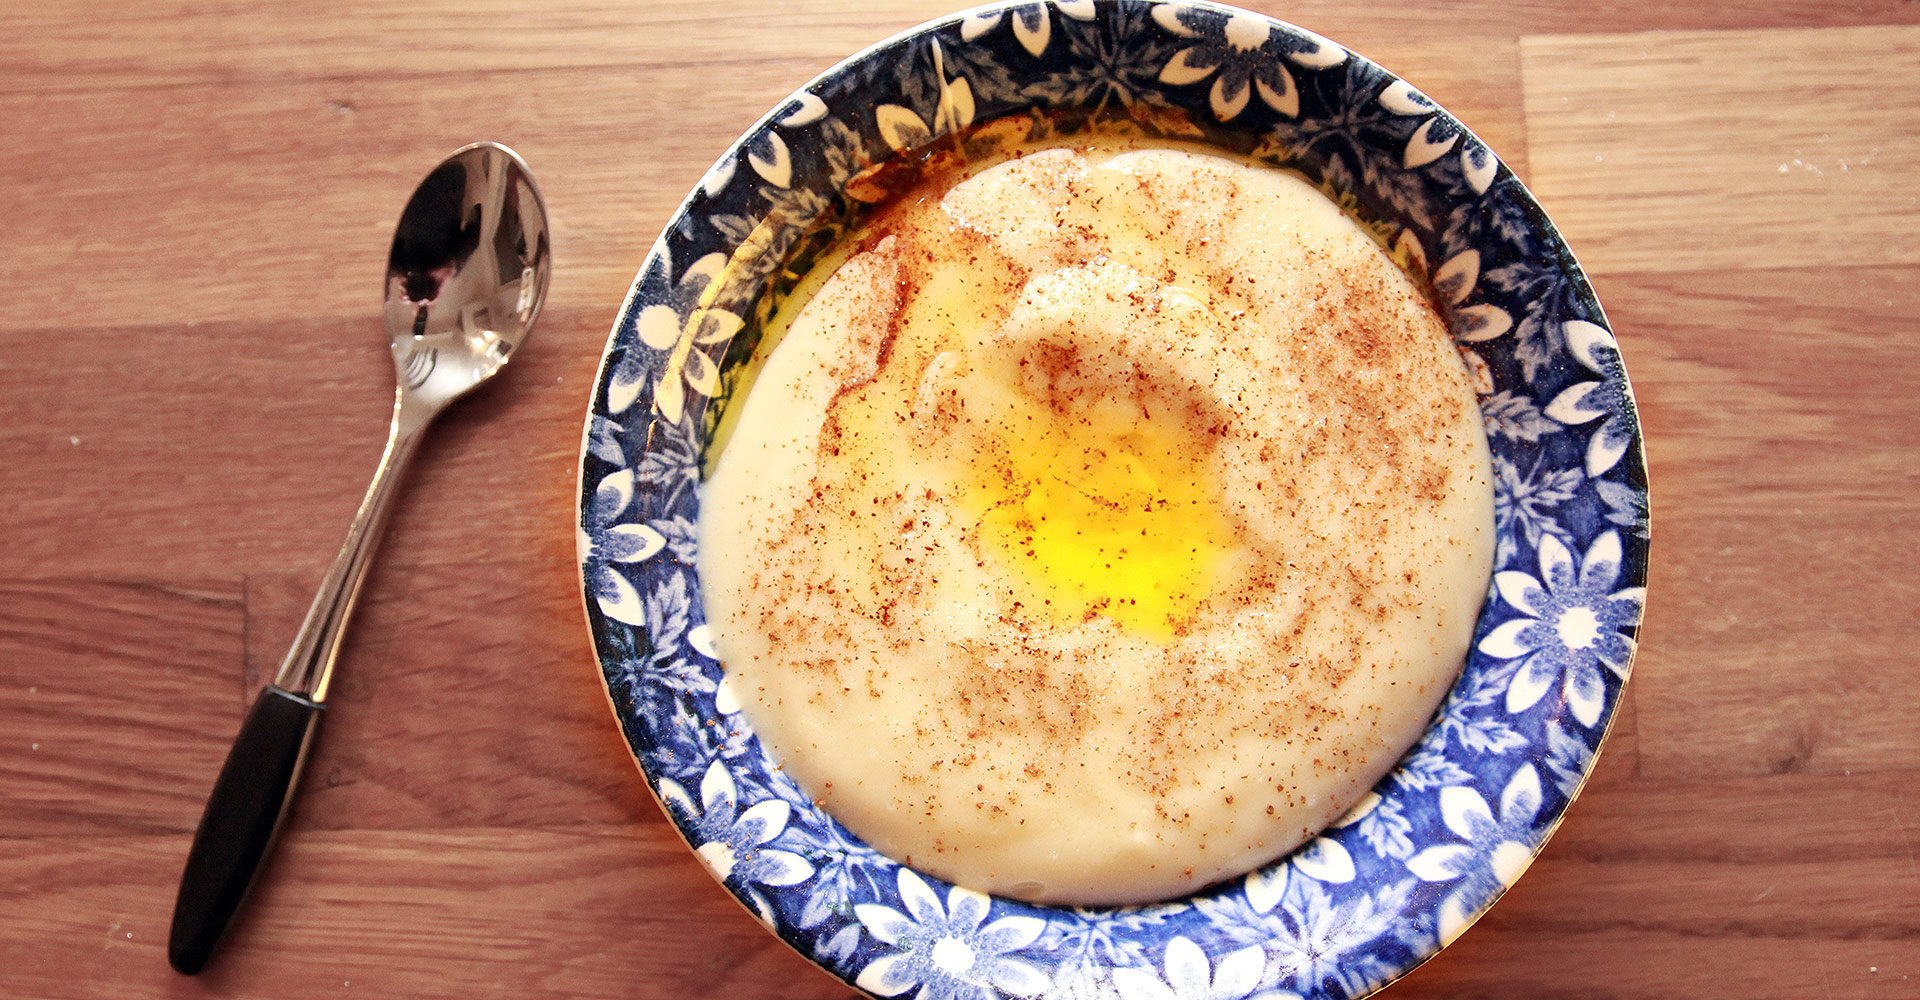 Sour cream porridge in the making